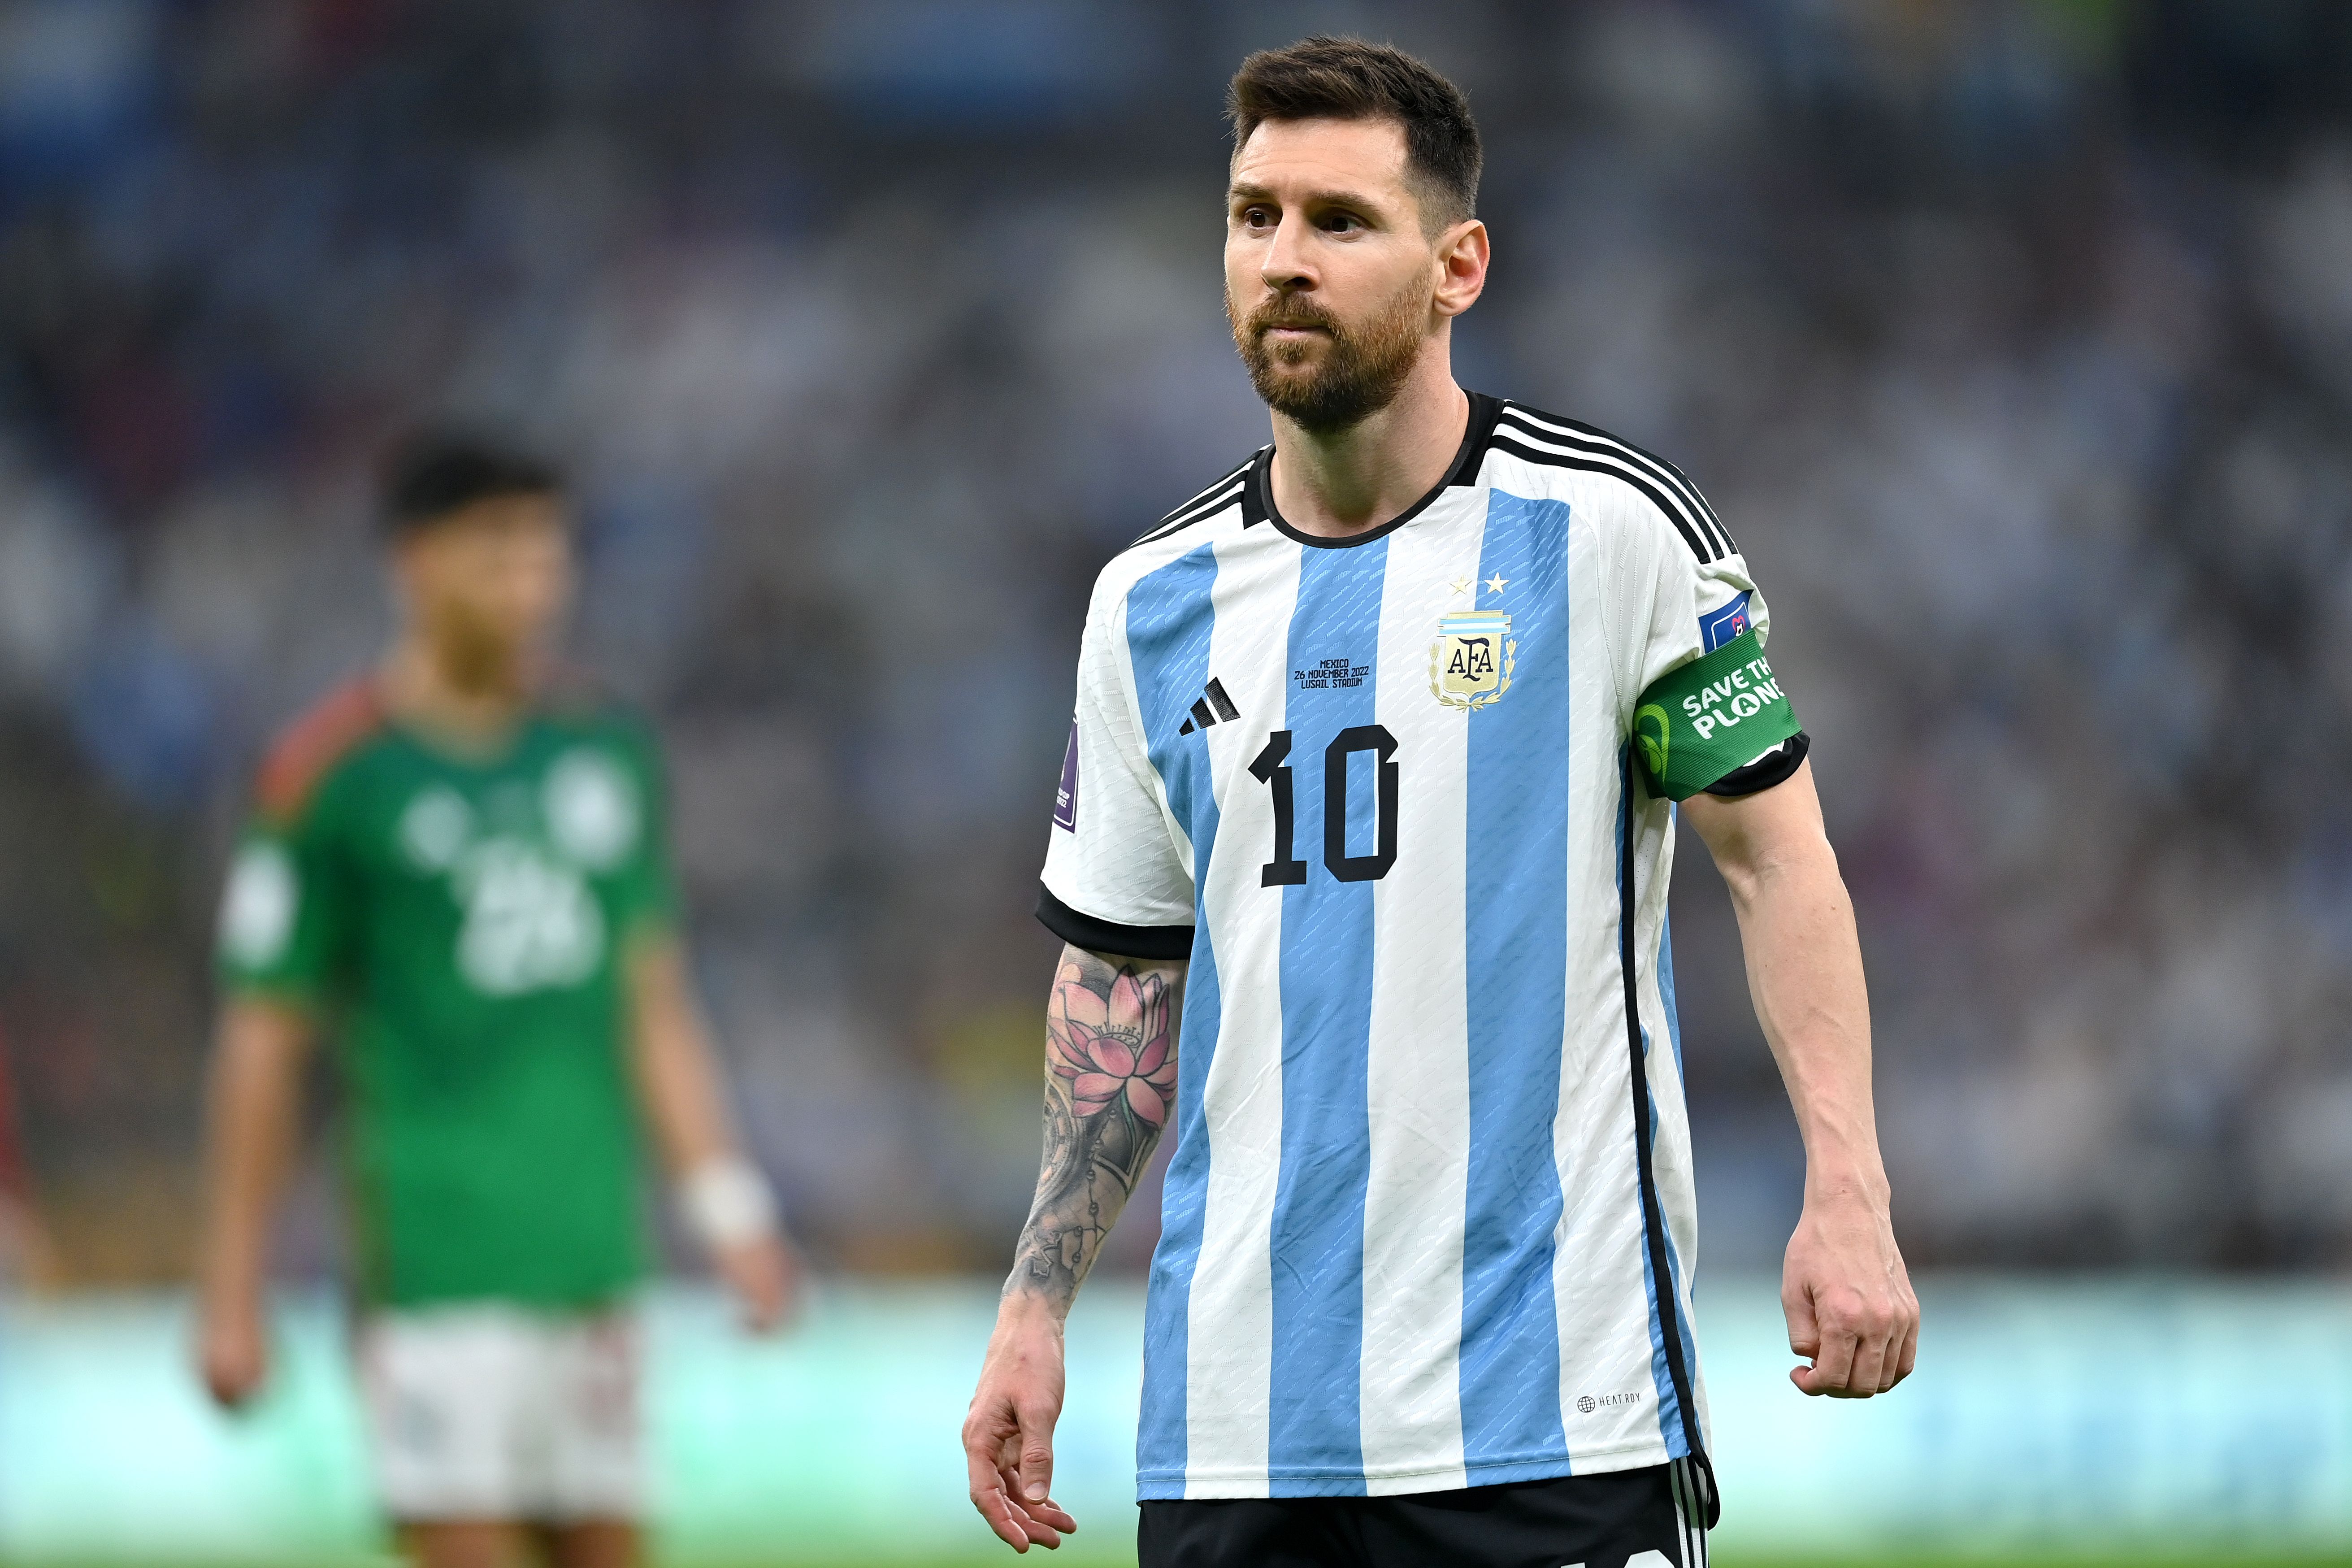 Lionel Messi has angered Canelo Alvarez